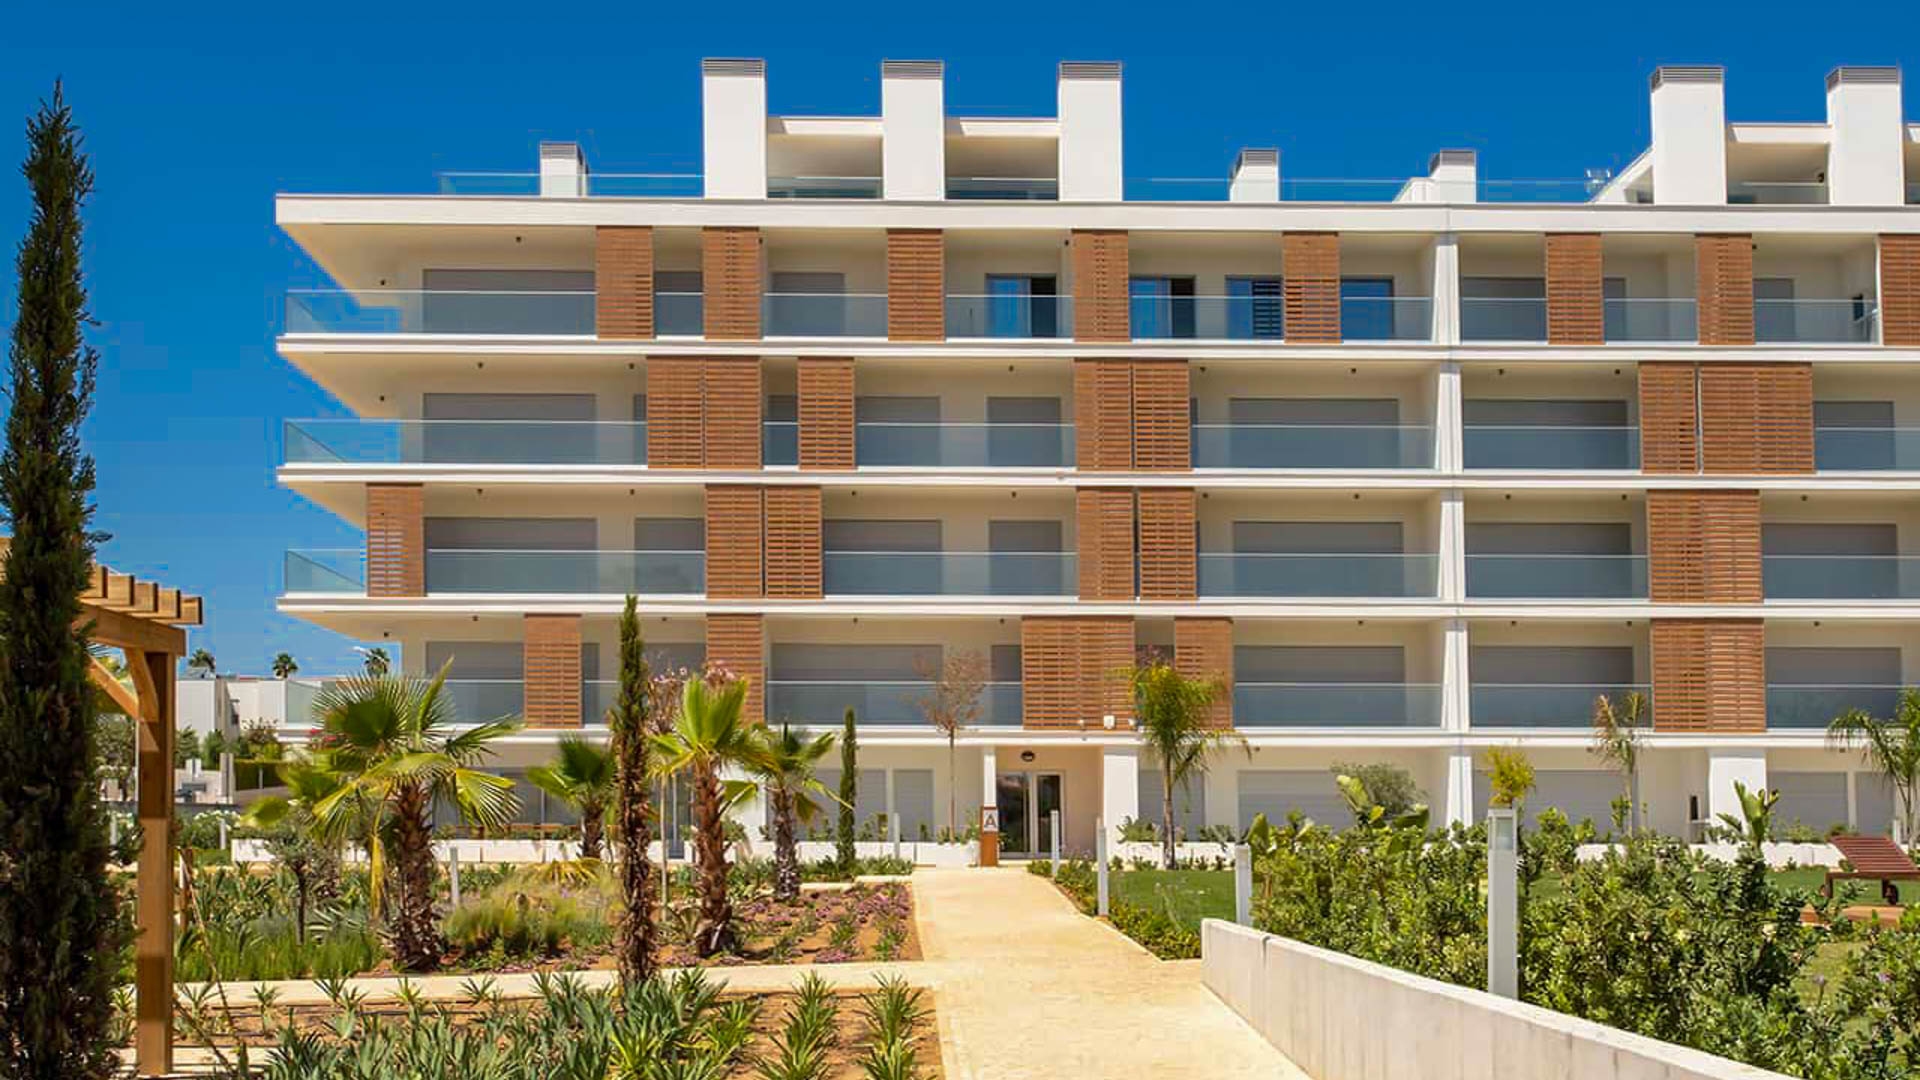 Neue luxuriöse 1-Zimmer-Wohnungen mit Pool, Albufeira | VM1868 Luxus-Studio-Apartments in einer neuen Wohnanlage, nur einen Steinwurf von Albufeiras atemberaubenden Stränden und Annehmlichkeiten entfernt.